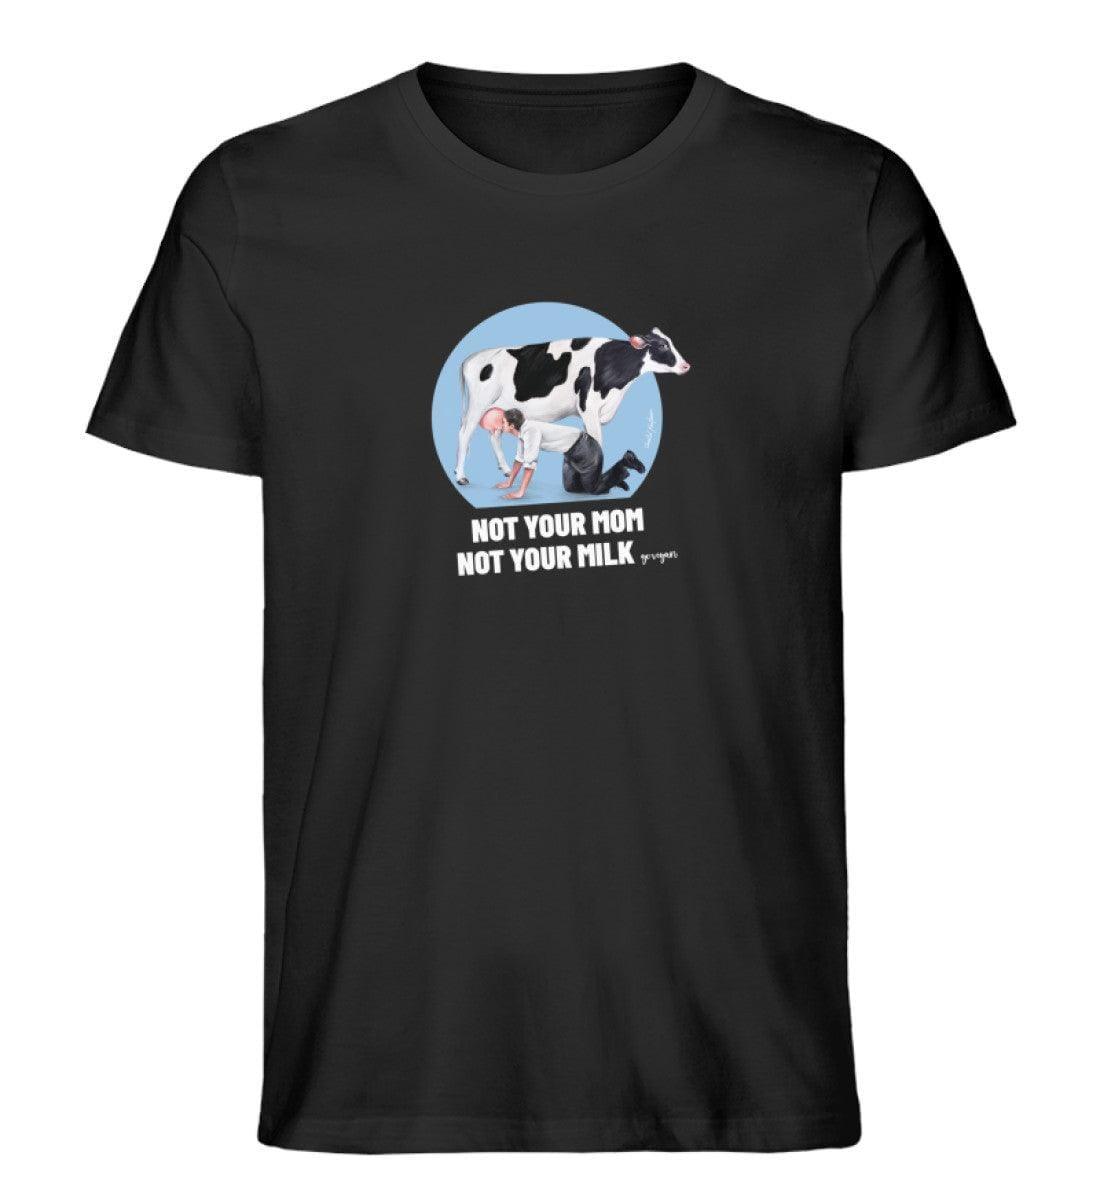 Not your Mom [Chantal Kaufmann] - Unisex Organic Shirt Rocker T-Shirt ST/ST Shirtee Schwarz S 